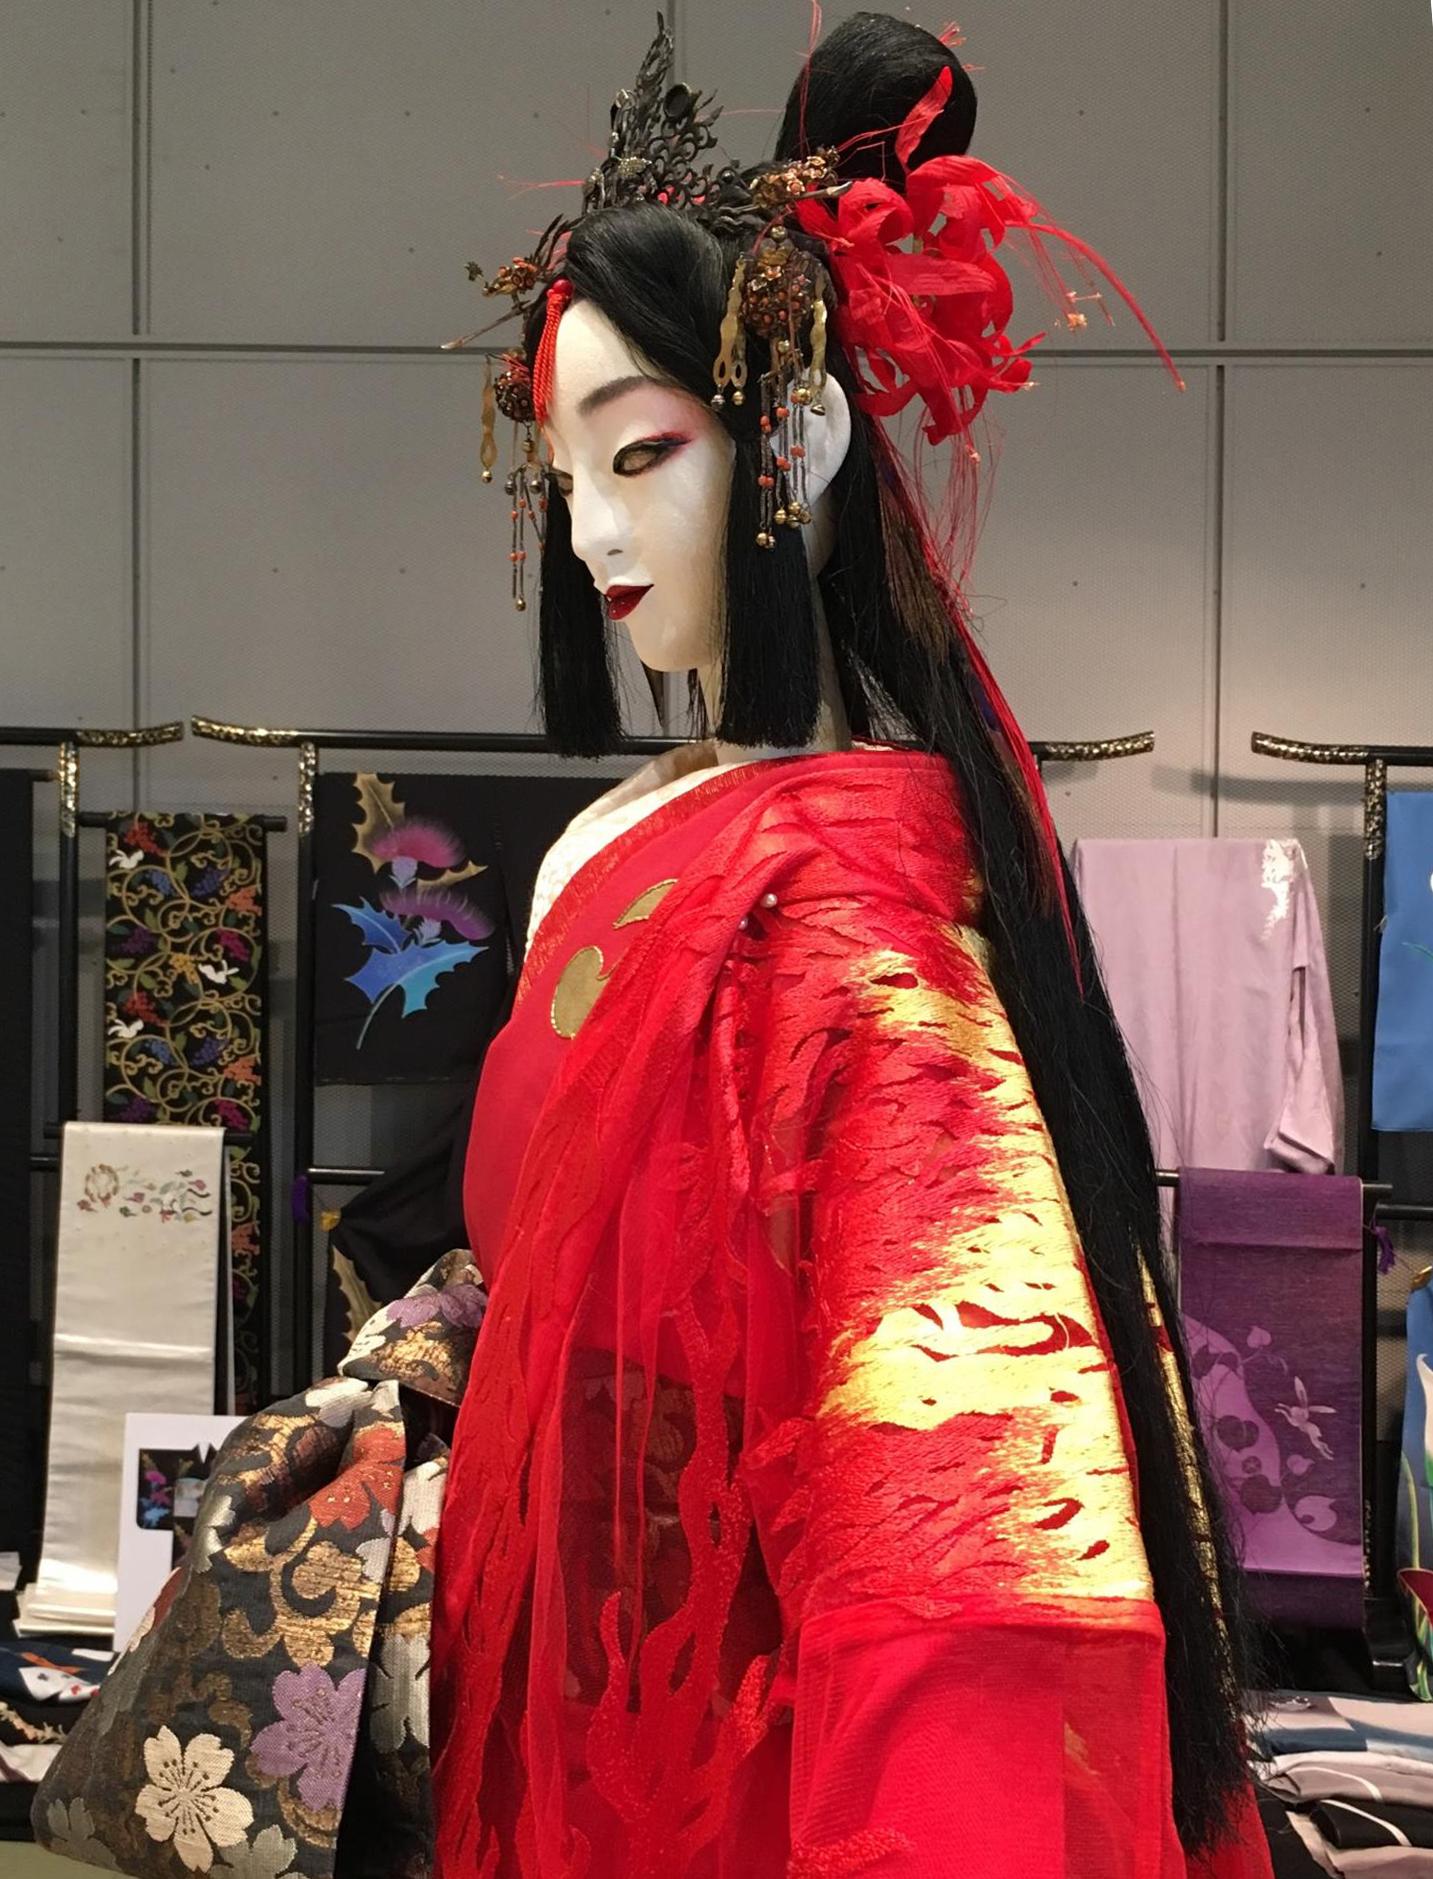 ホリ・ヒロシ 人形舞と着物の世界 in 二子玉川」 “華ときもの祭 2020 